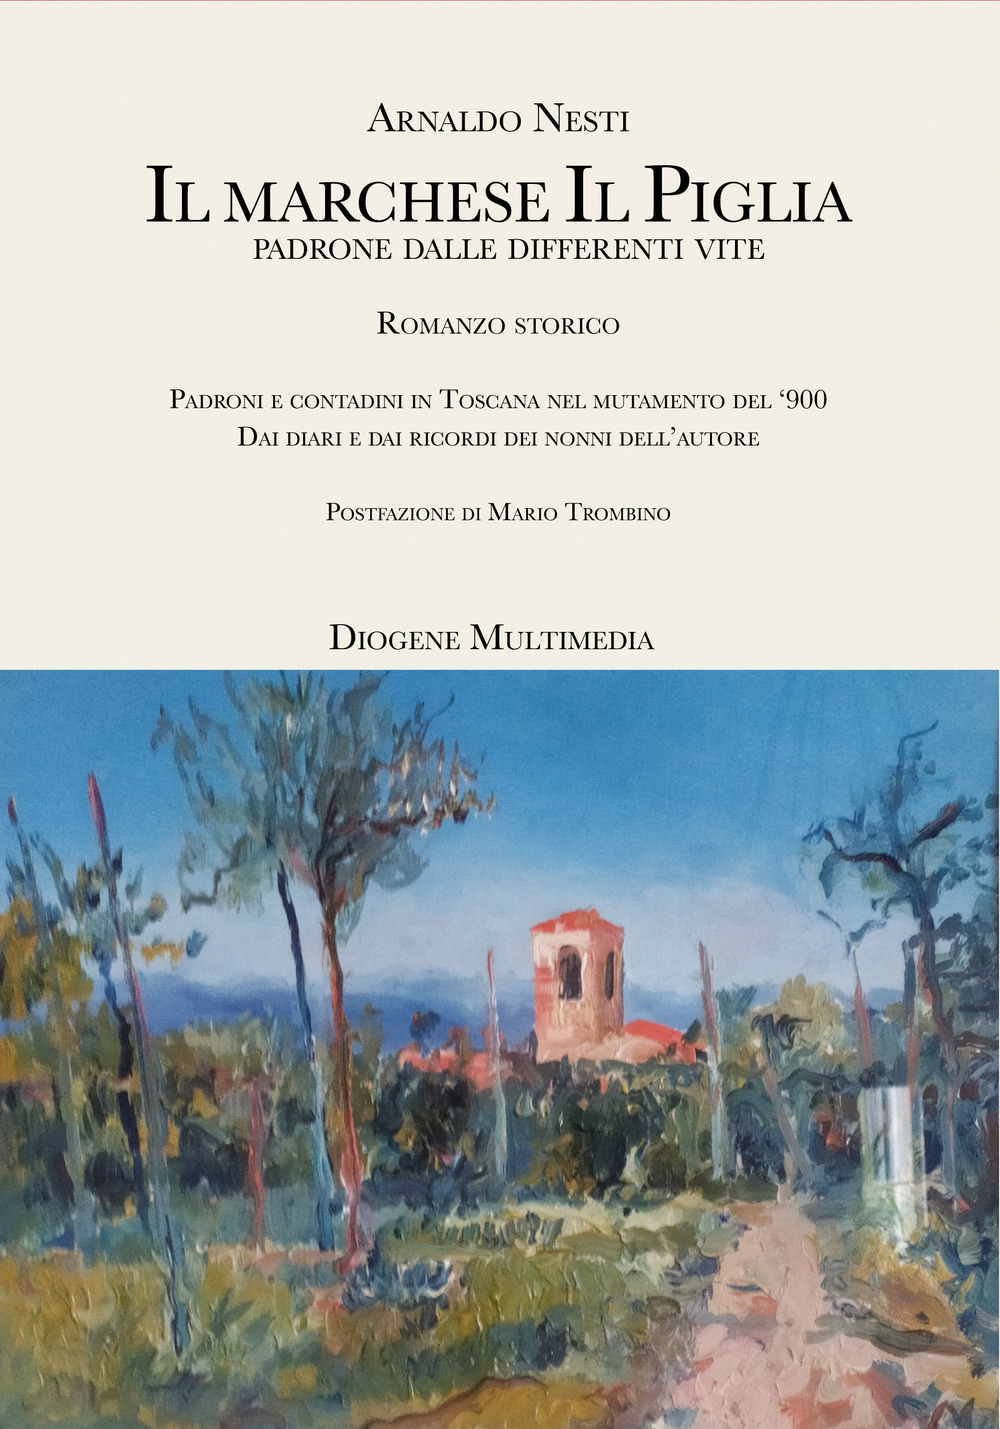 Il marchese Il Piglia. Padroni e contadini in Toscana nel mutamento del '900